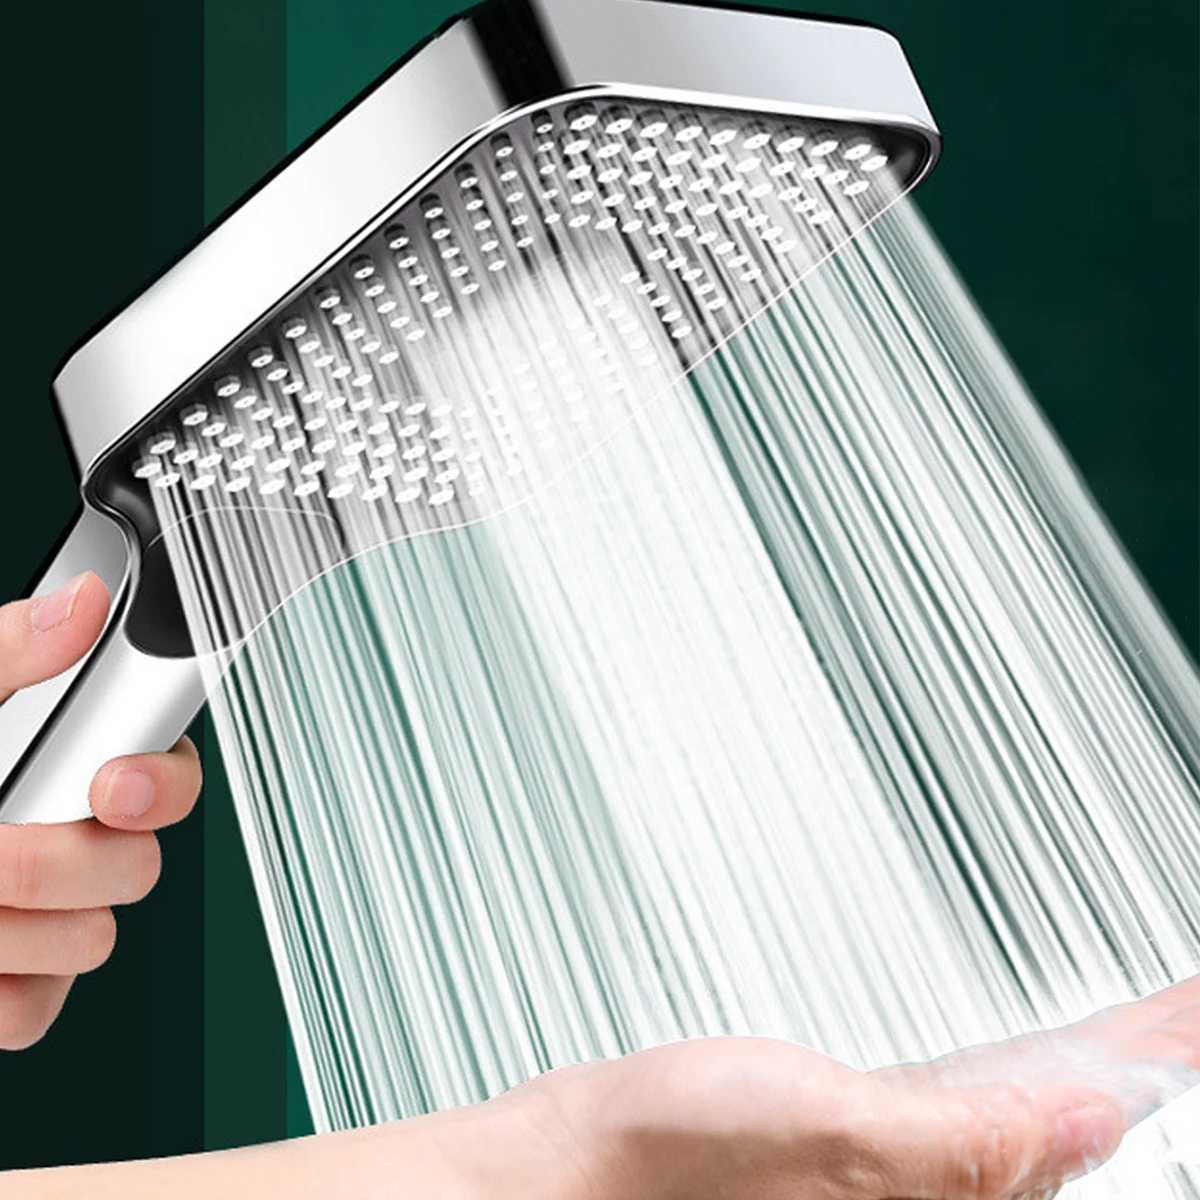 Łazienka głowice prysznicowe doładowanie wysokiego ciśnienia głowice prysznicowe 3 tryby regulowane wodę oszczędność prysznica rozpylacza wodne akcesoria do masażu akcesoria